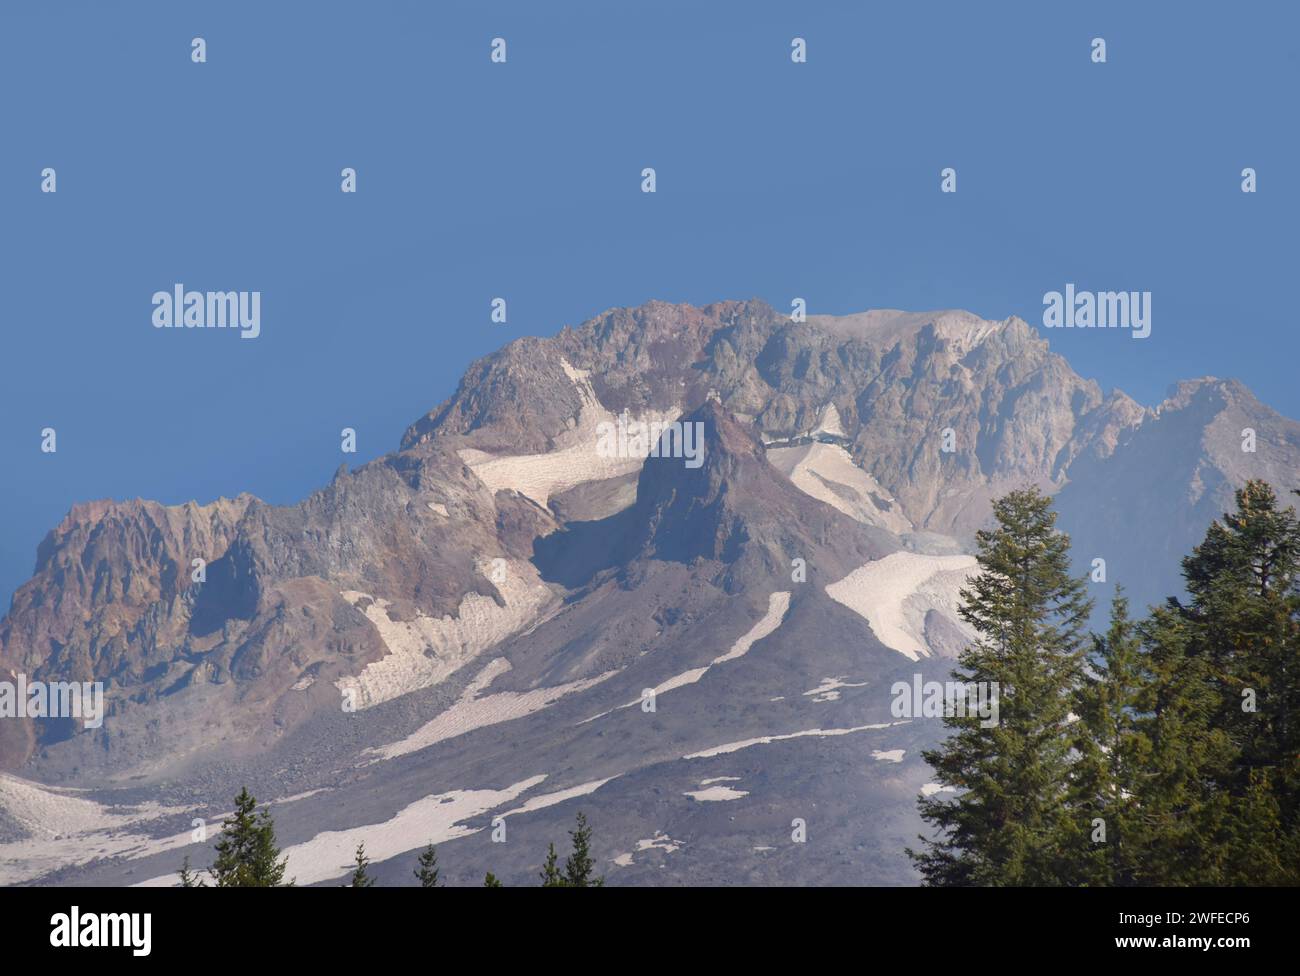 El pico escarpado del Monte Hood está enmarcado por el cielo azul. La nieve todavía se aferra a la superficie. Foto de stock